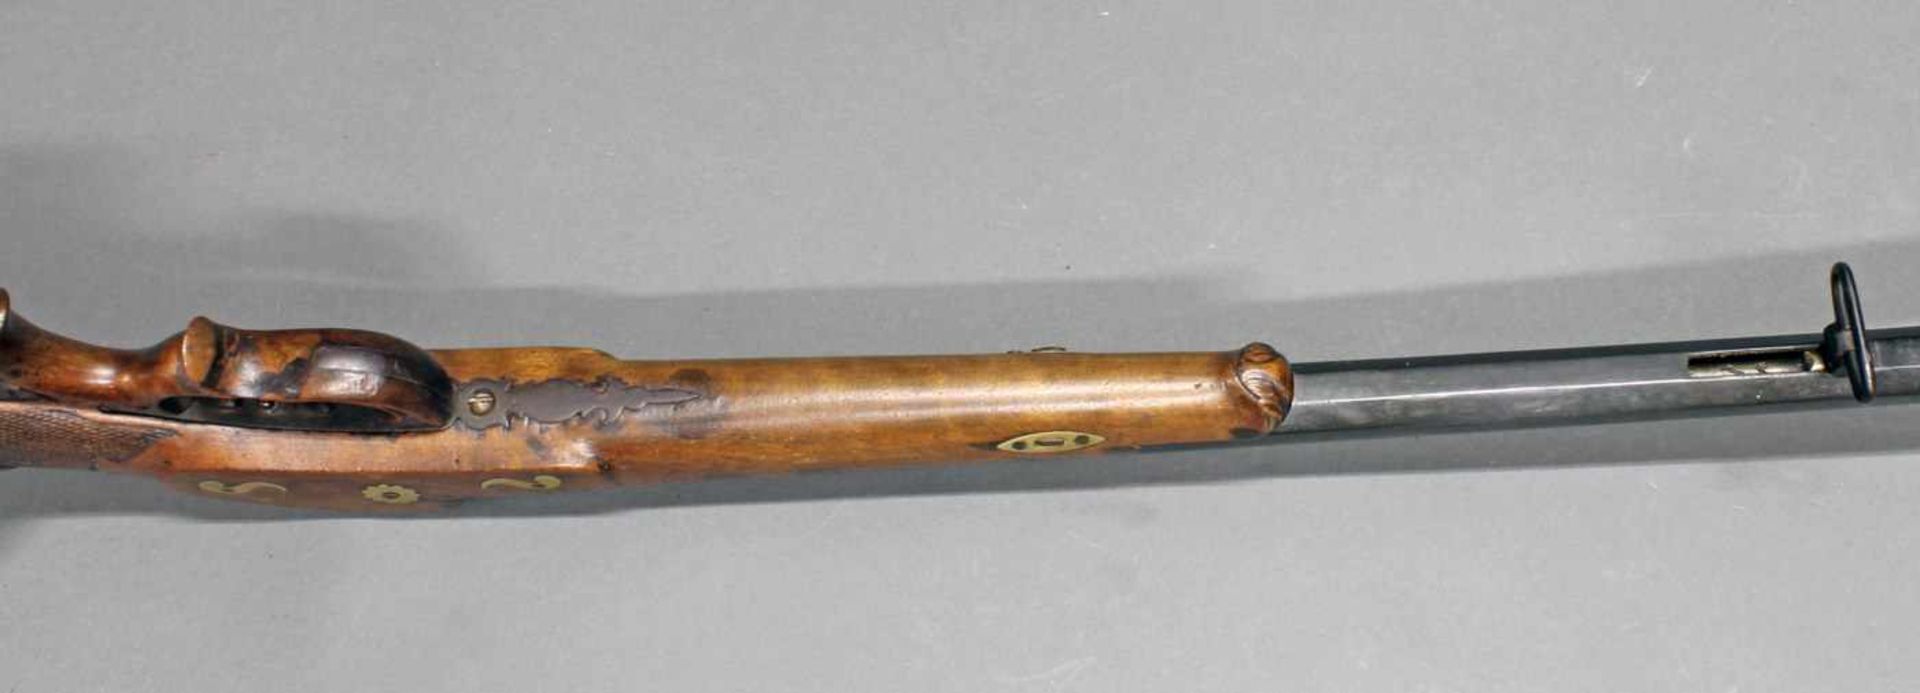 Zimmerstutzen/Salongewehr, deutsch, um 1850/60, Nussbaumschaft mit Schaftverschneidung, durchbrochen - Bild 9 aus 10